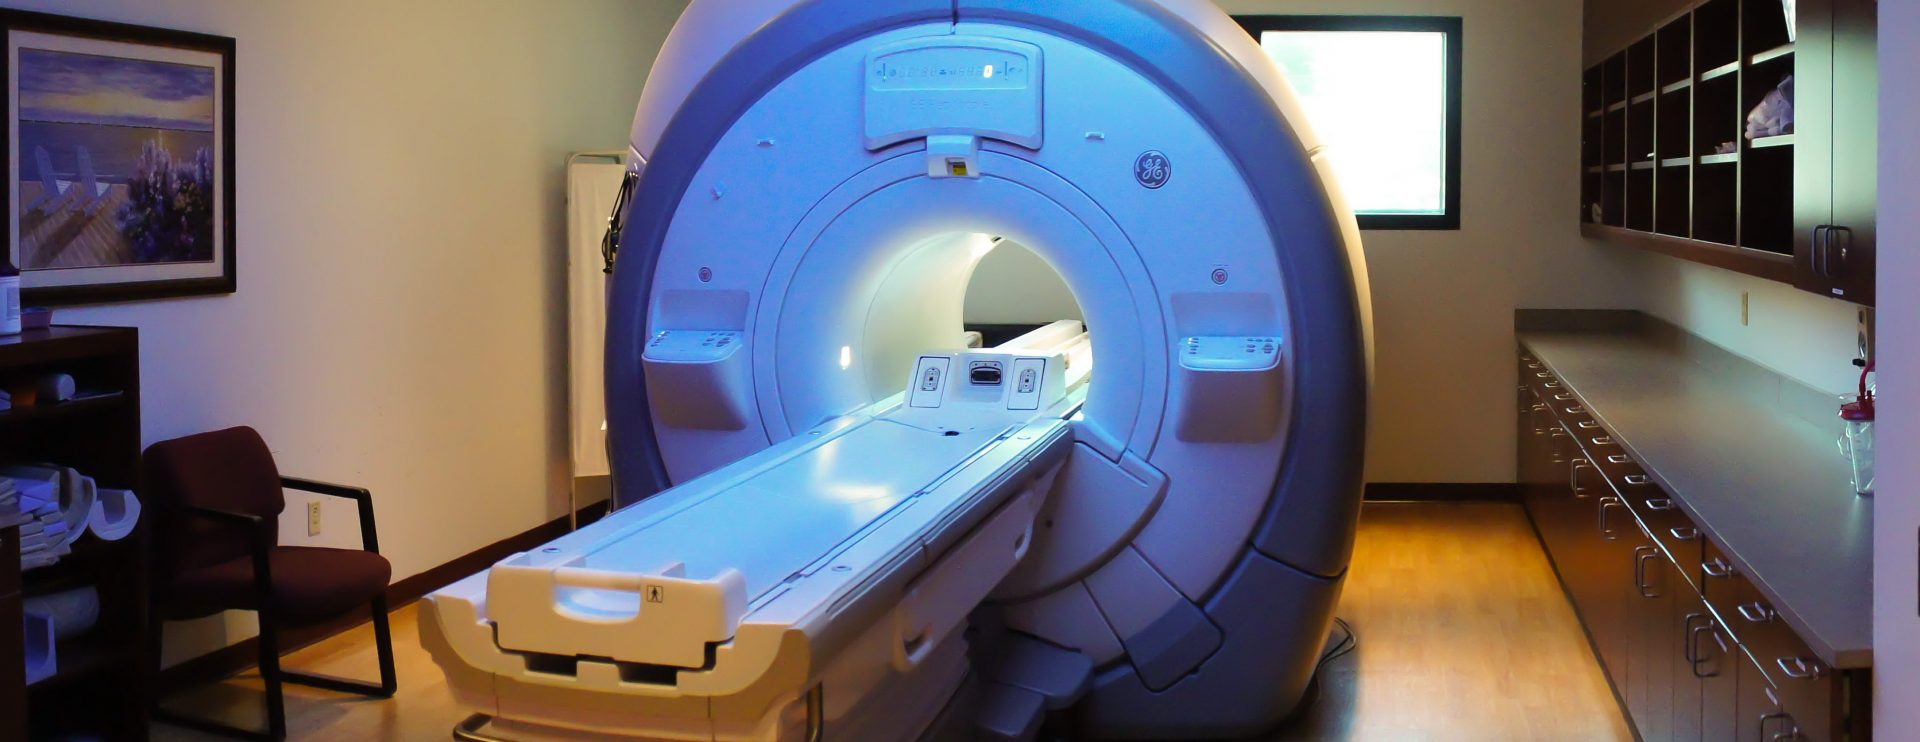 MRI Cervical Spine Case Study